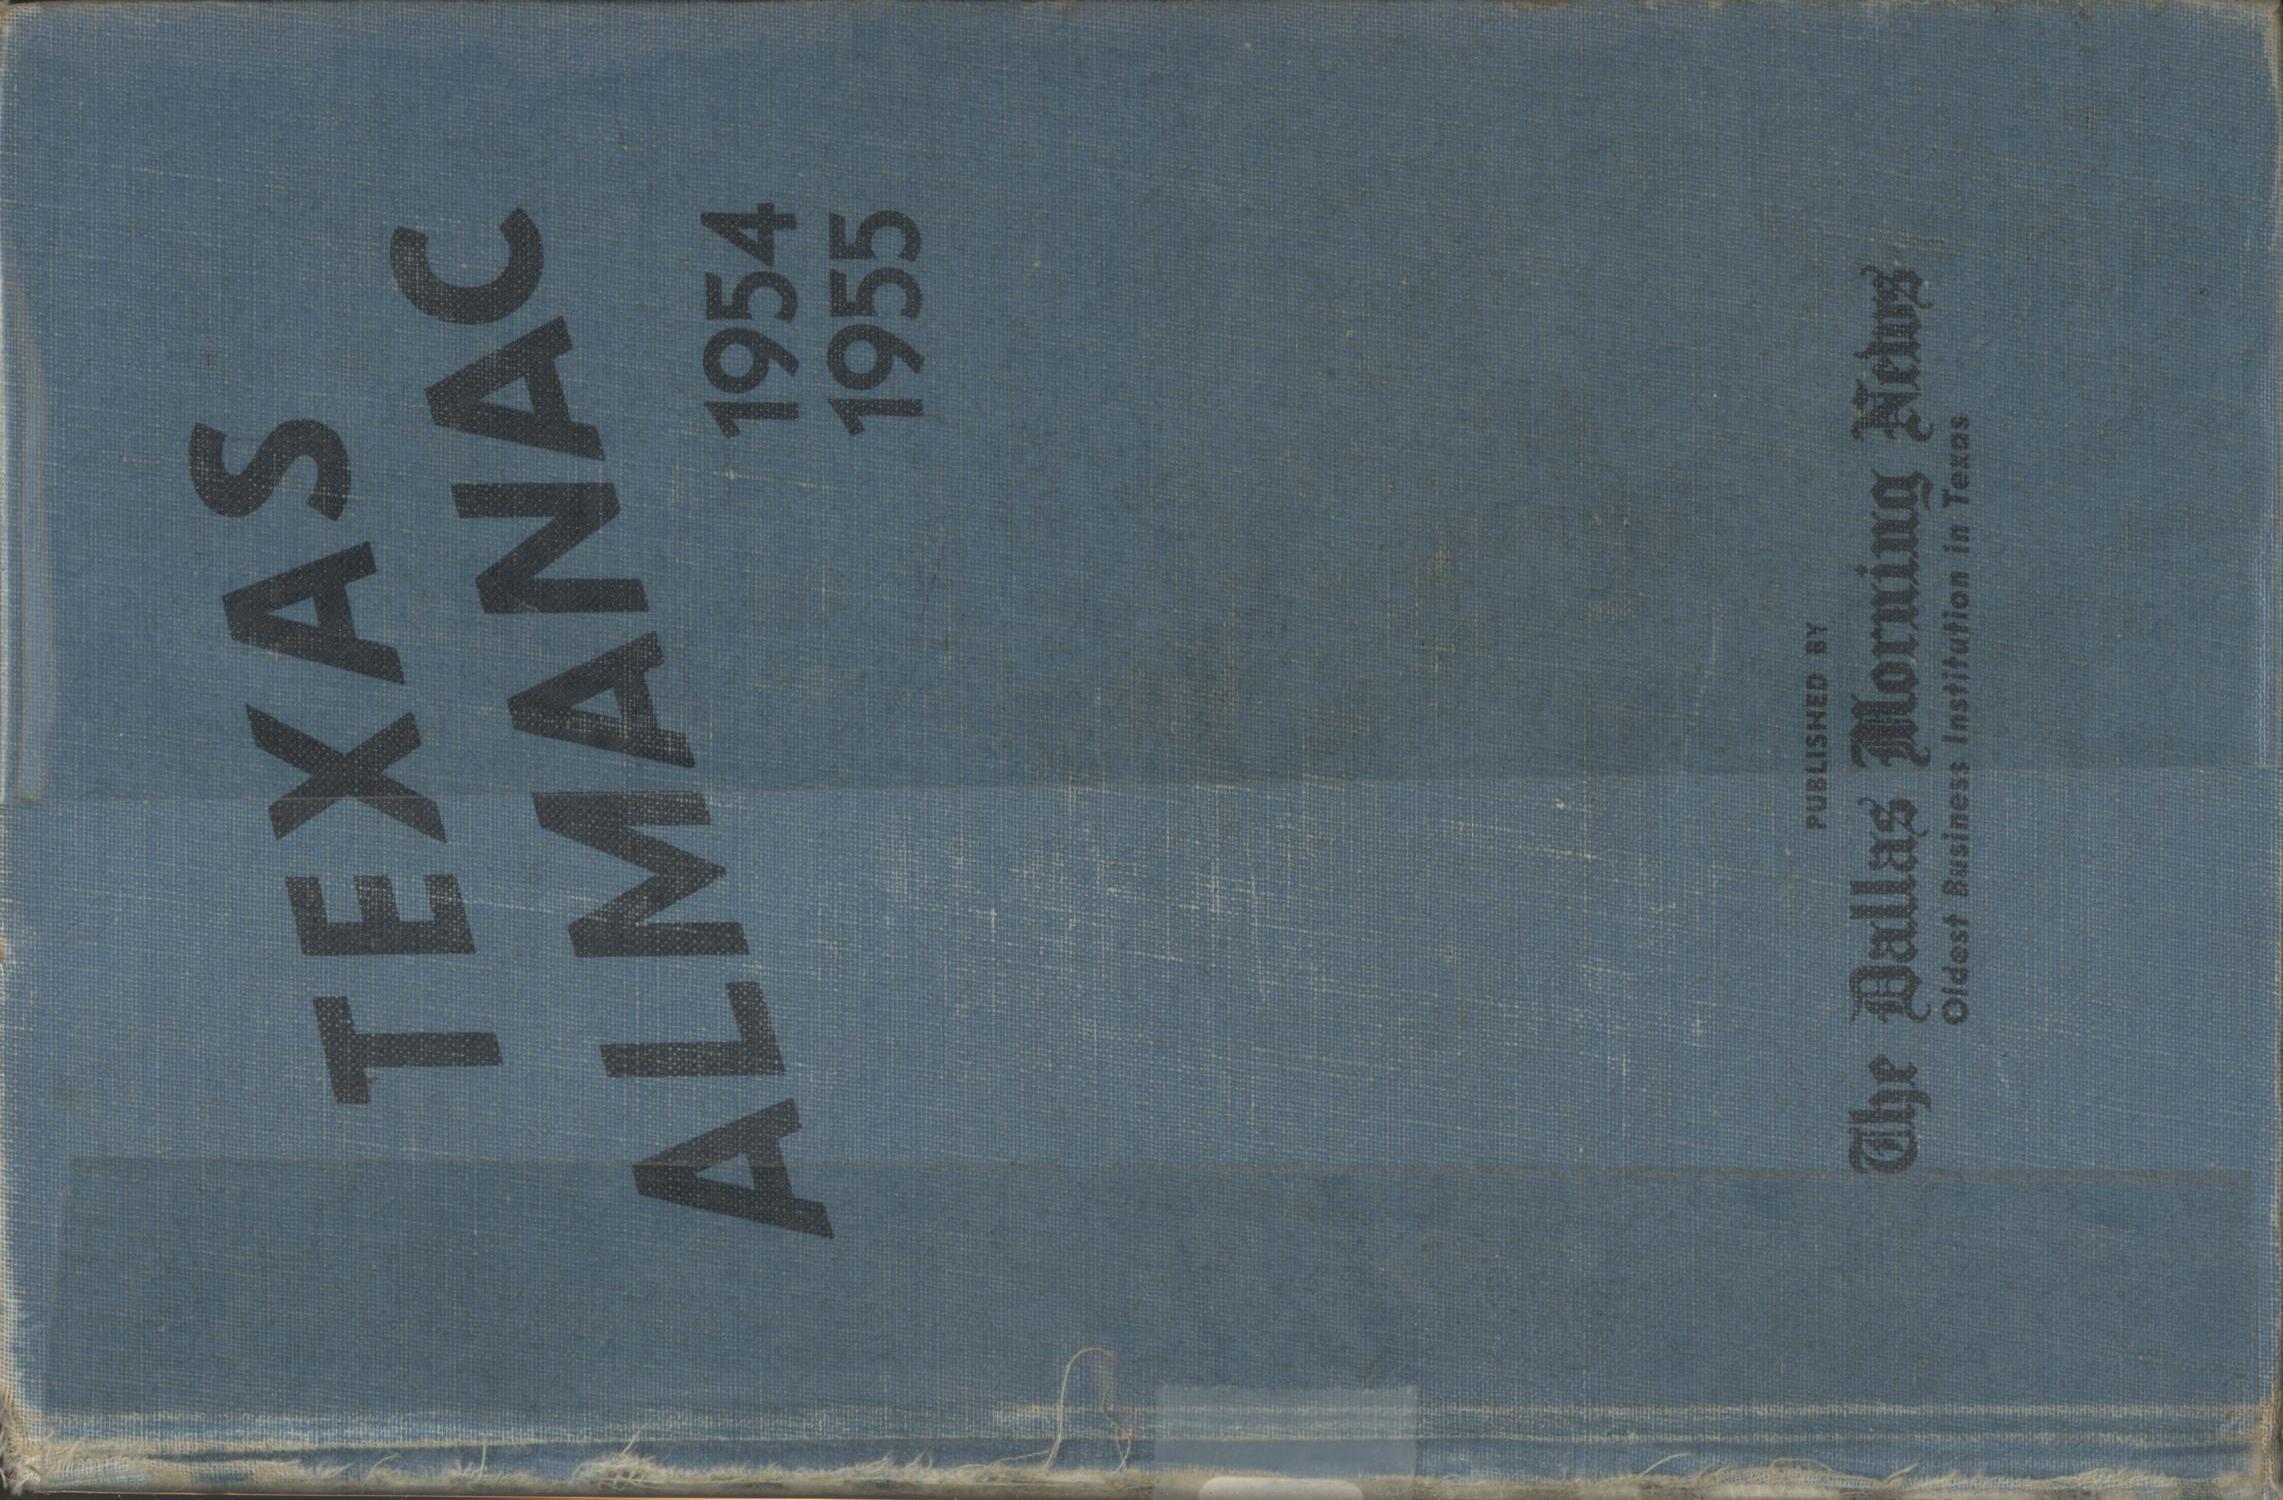 Texas Almanac, 1954-1955
                                                
                                                    Front Cover
                                                